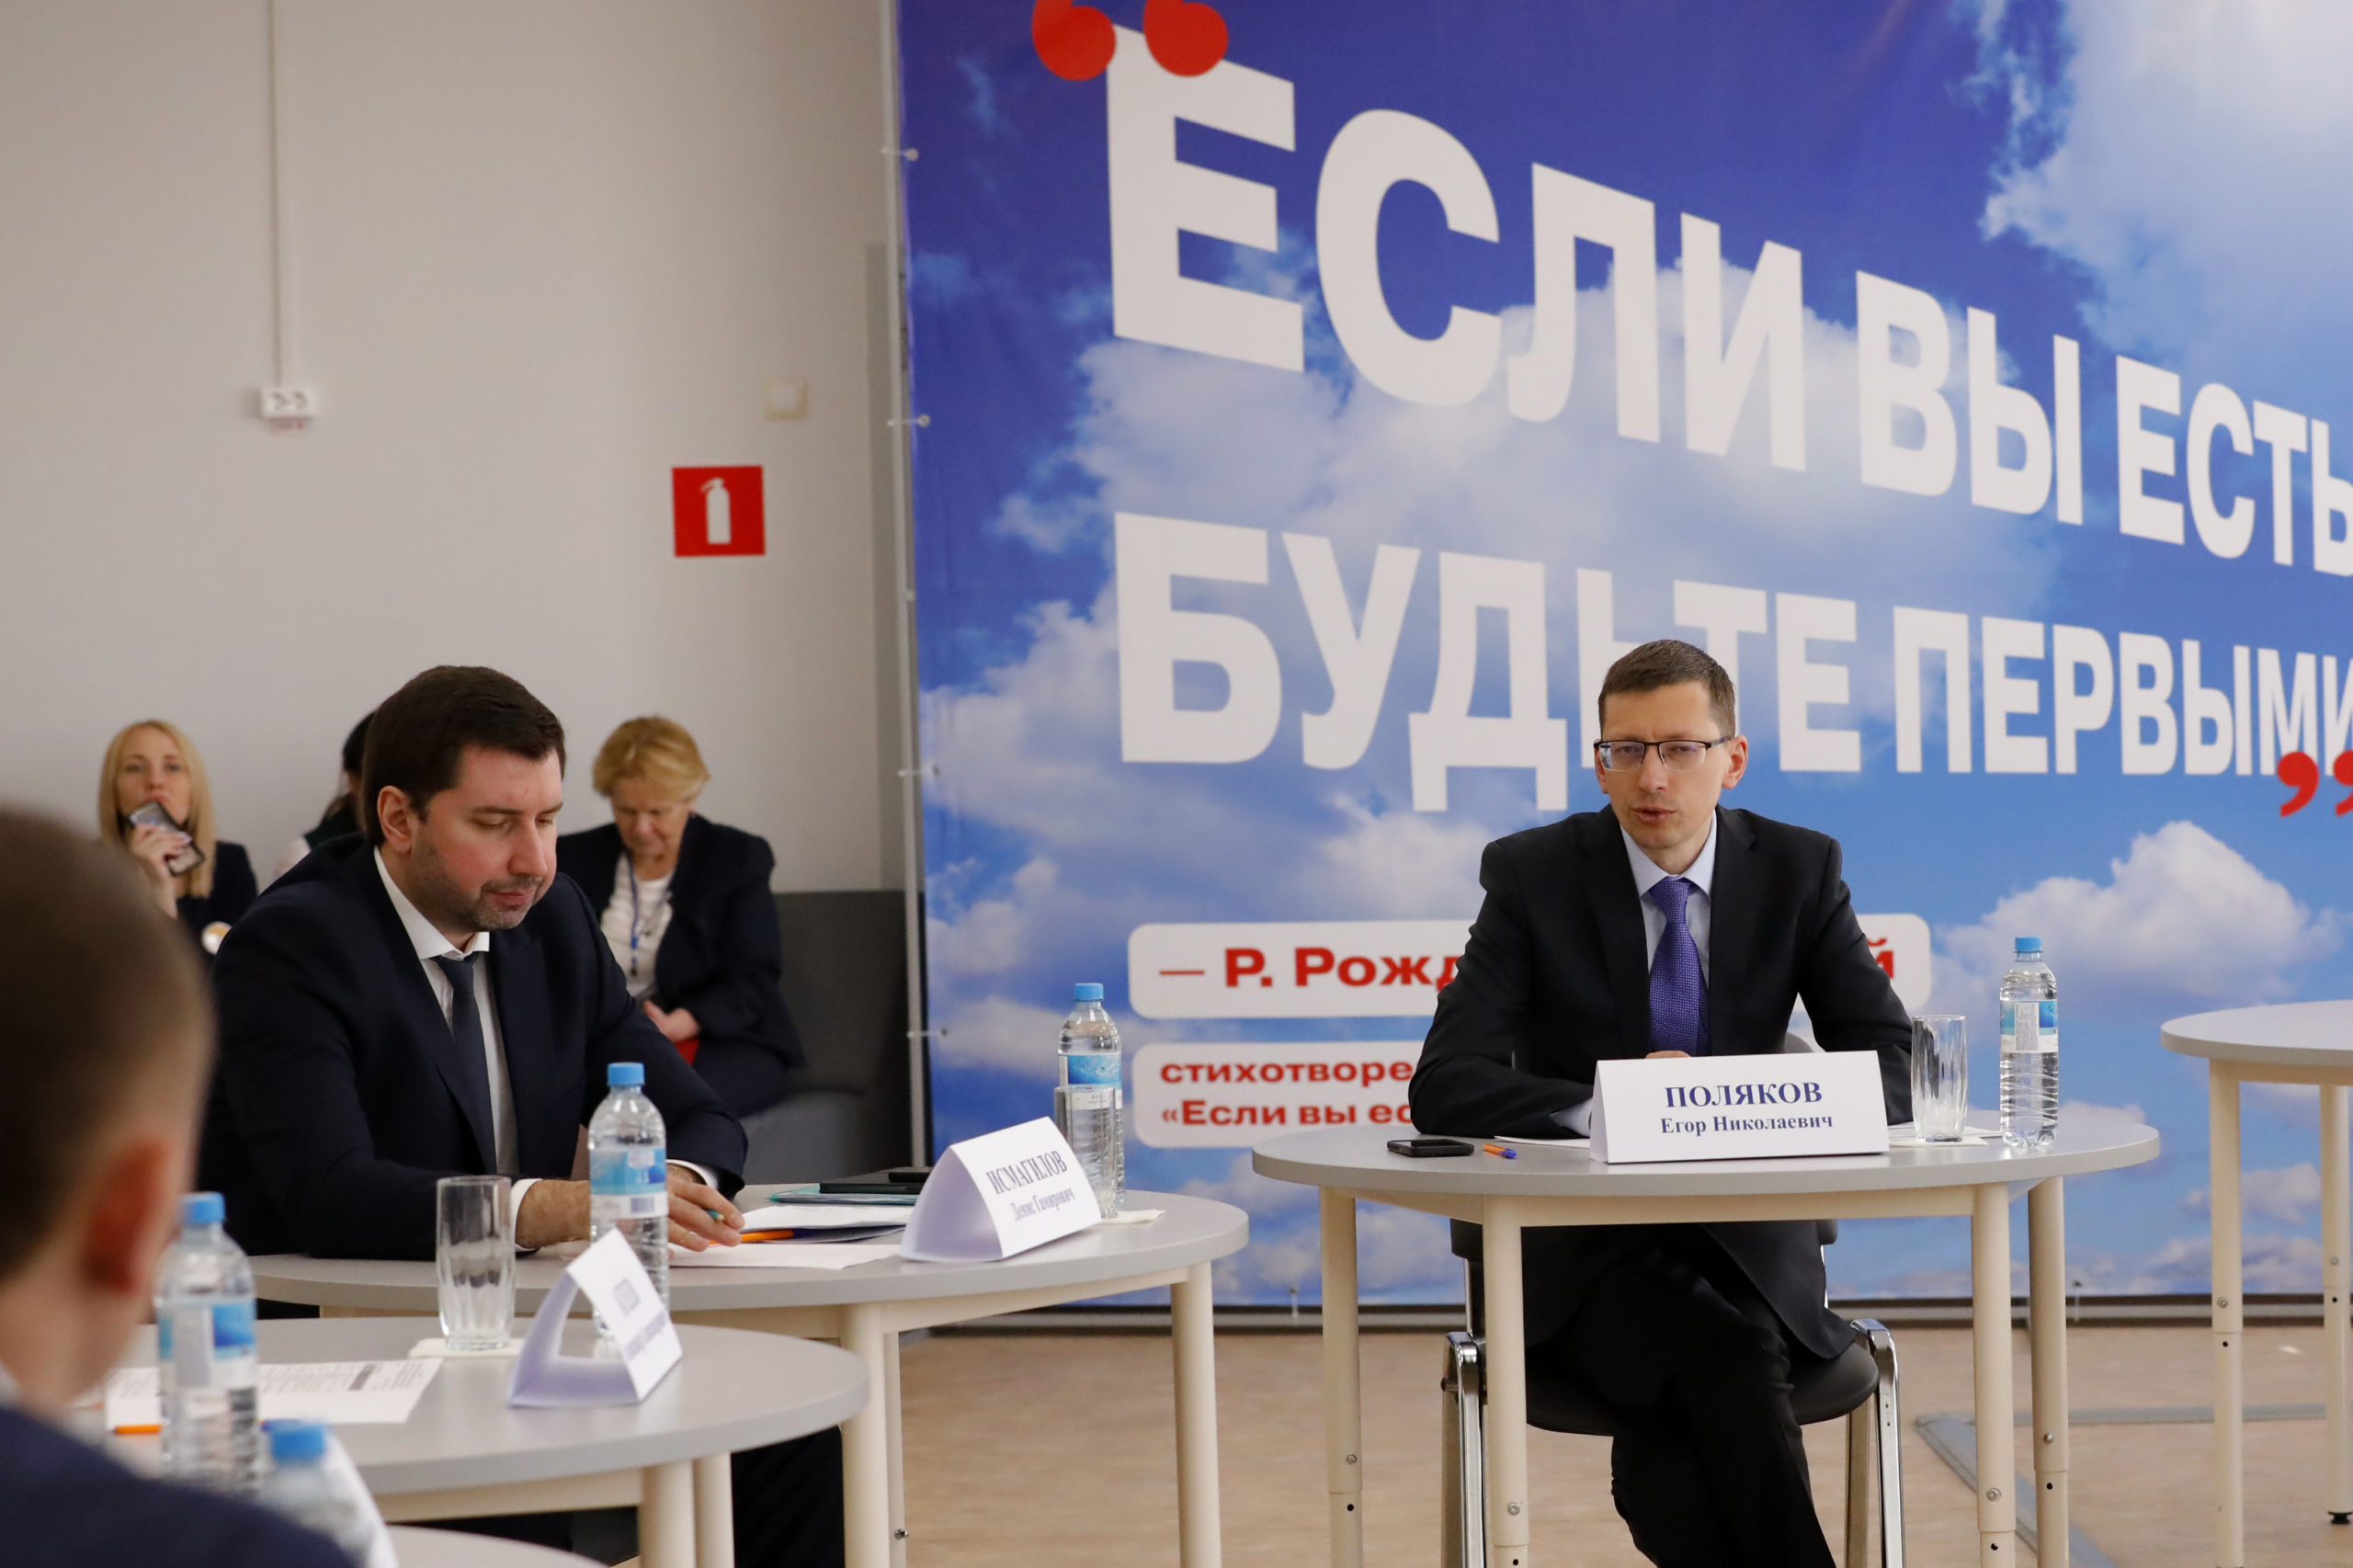 Егор Поляков: «Роль муниципалитетов в выполнении поставленных президентом России задач крайне важна»